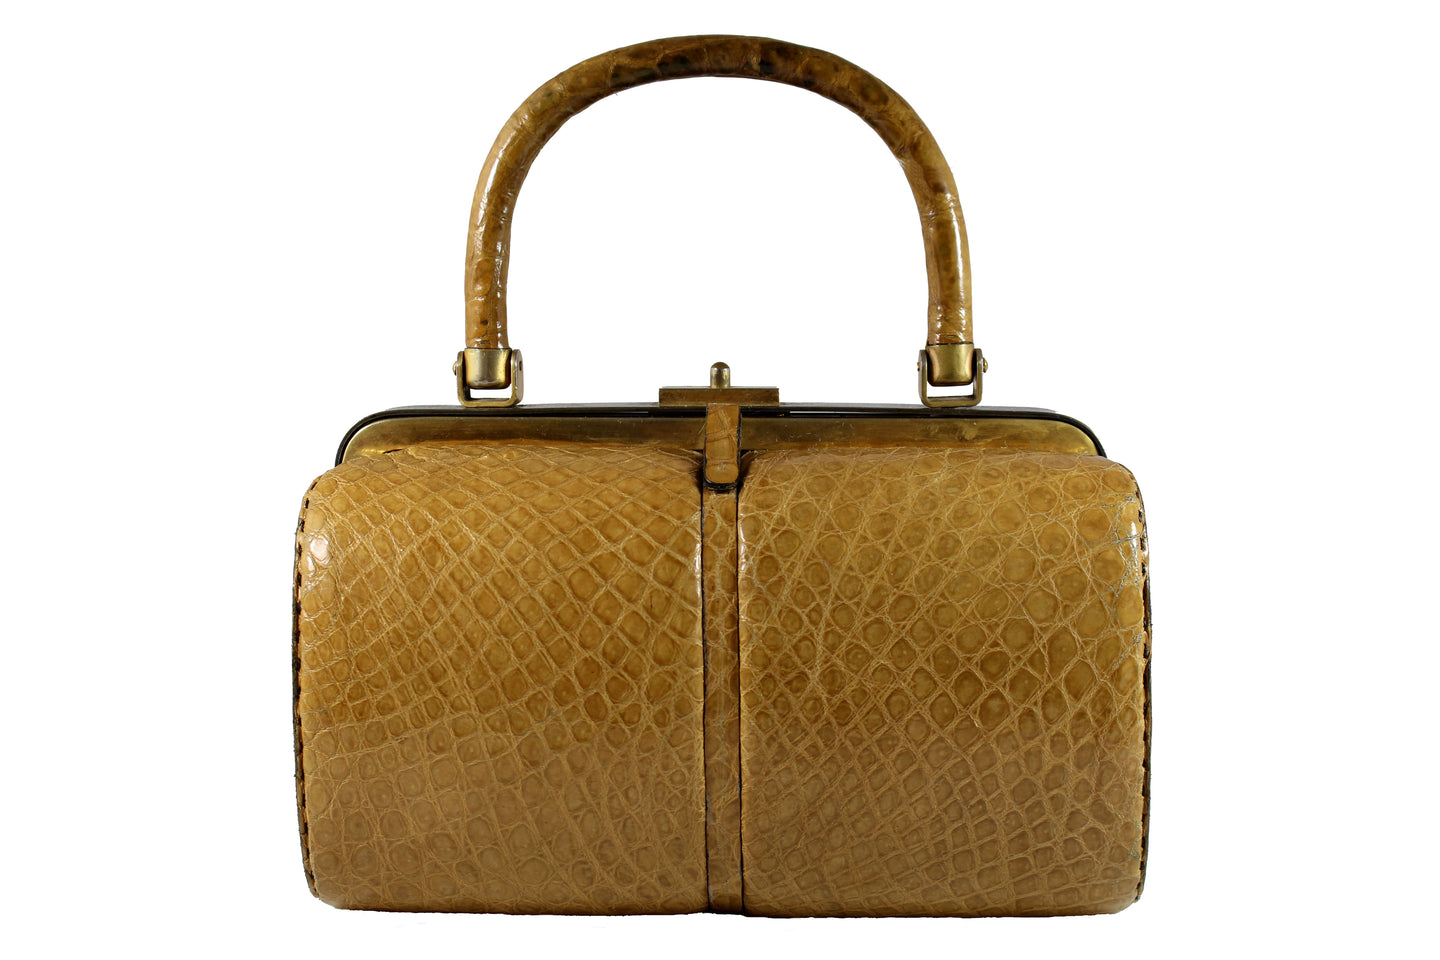 WIEN cylindrical caramel crocodile skin handbag